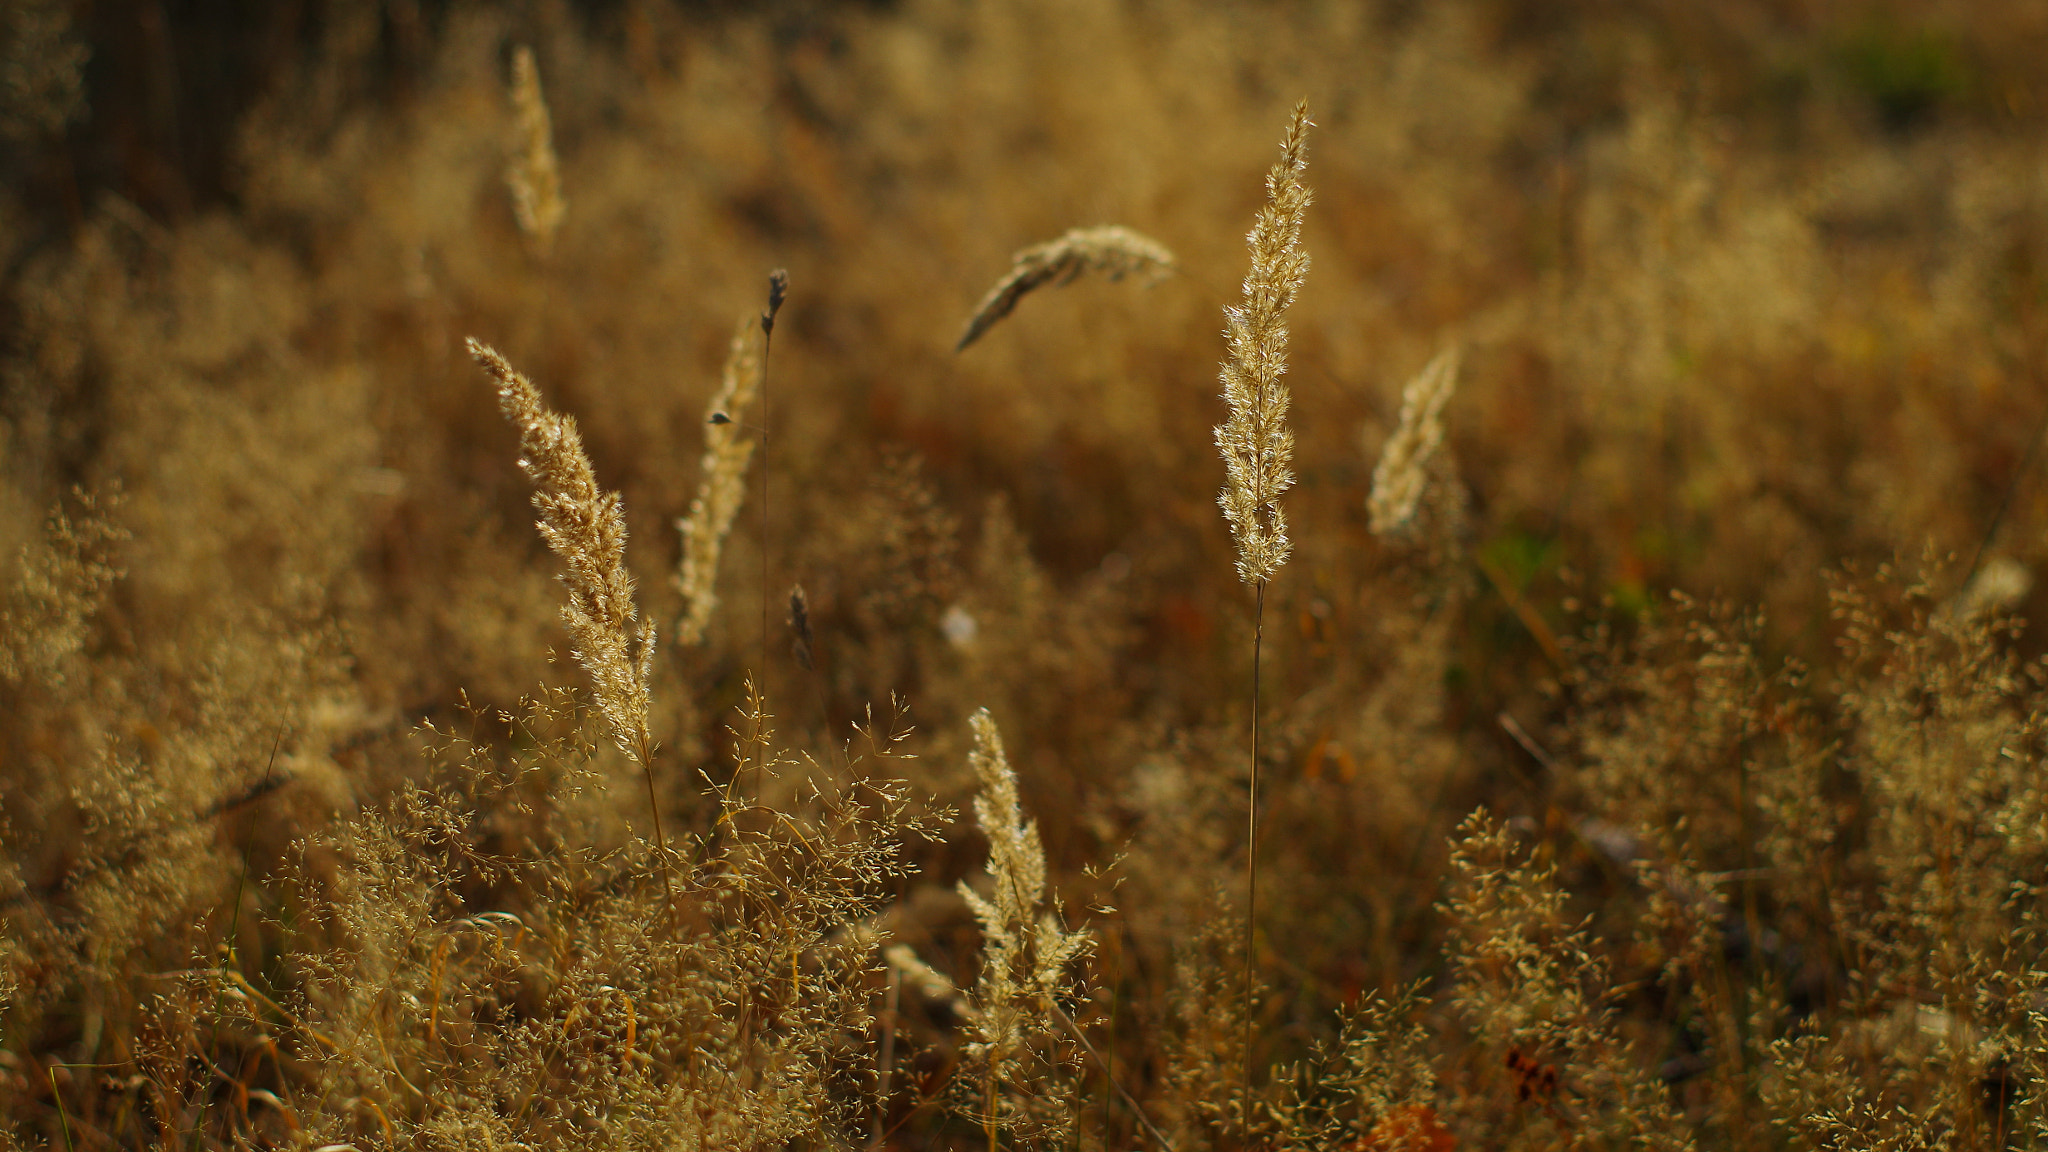 Pentax K-30 sample photo. Golden grass photography